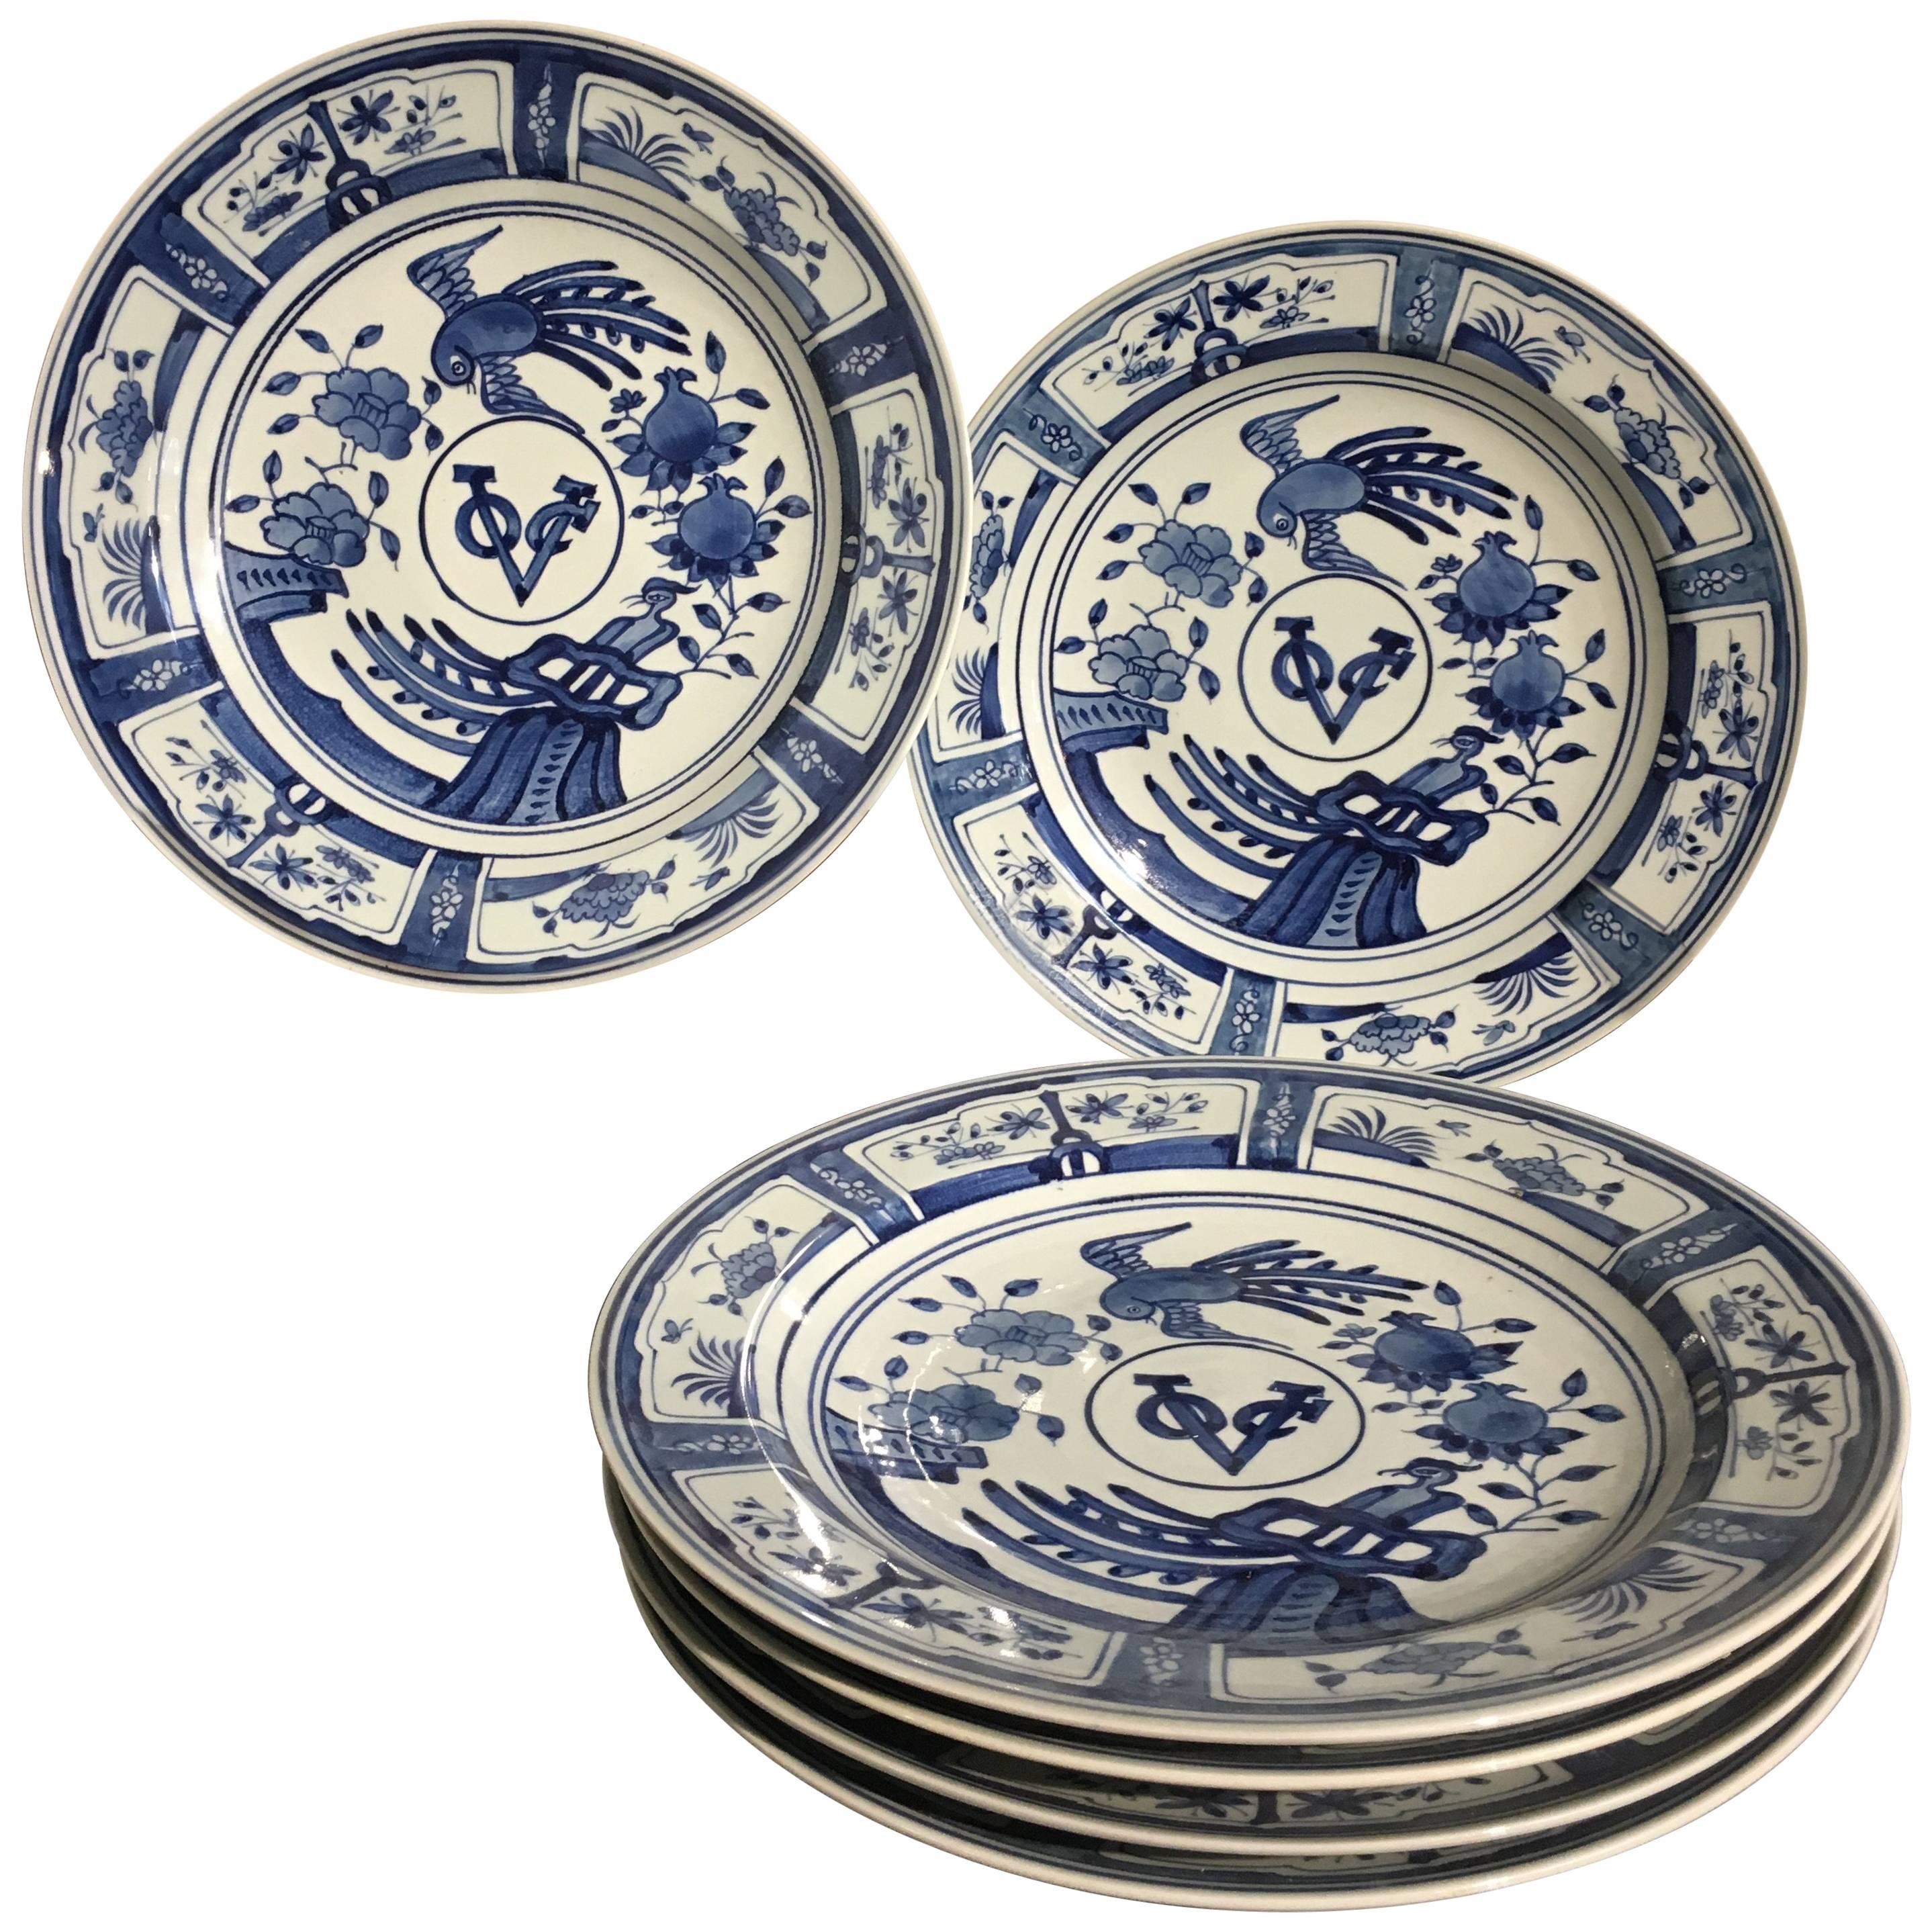 Six assiettes de présentation en porcelaine bleue et blanche de style exportation chinoise VOC, XXe siècle